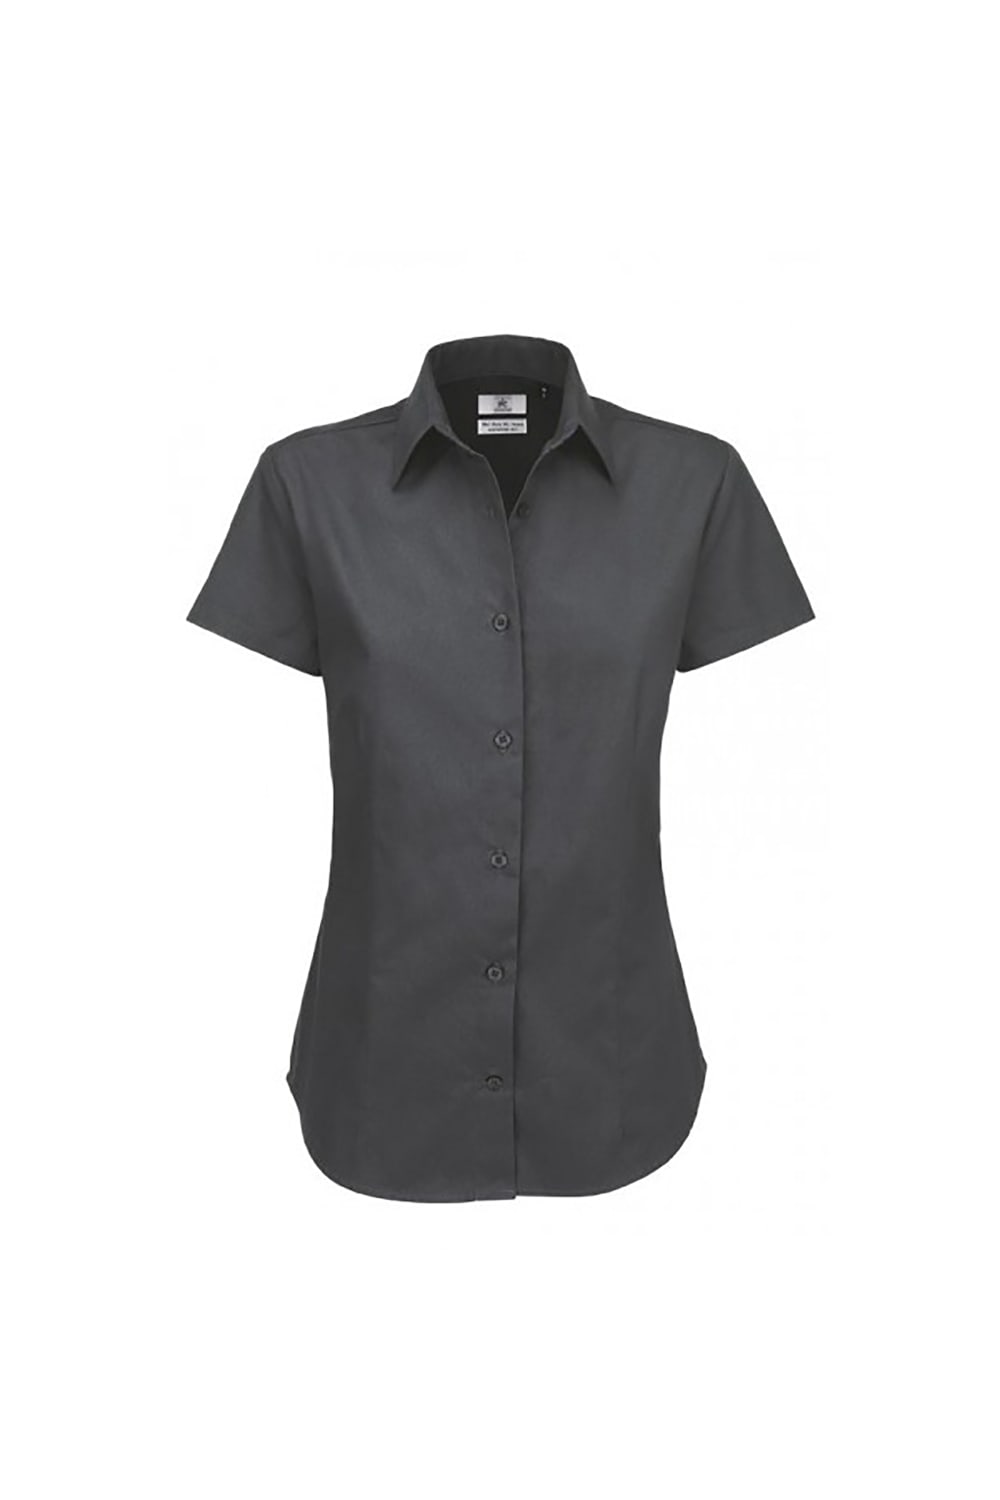 B&C Womens/Ladies Sharp Twill Short Sleeve Shirt (Dark Gray)